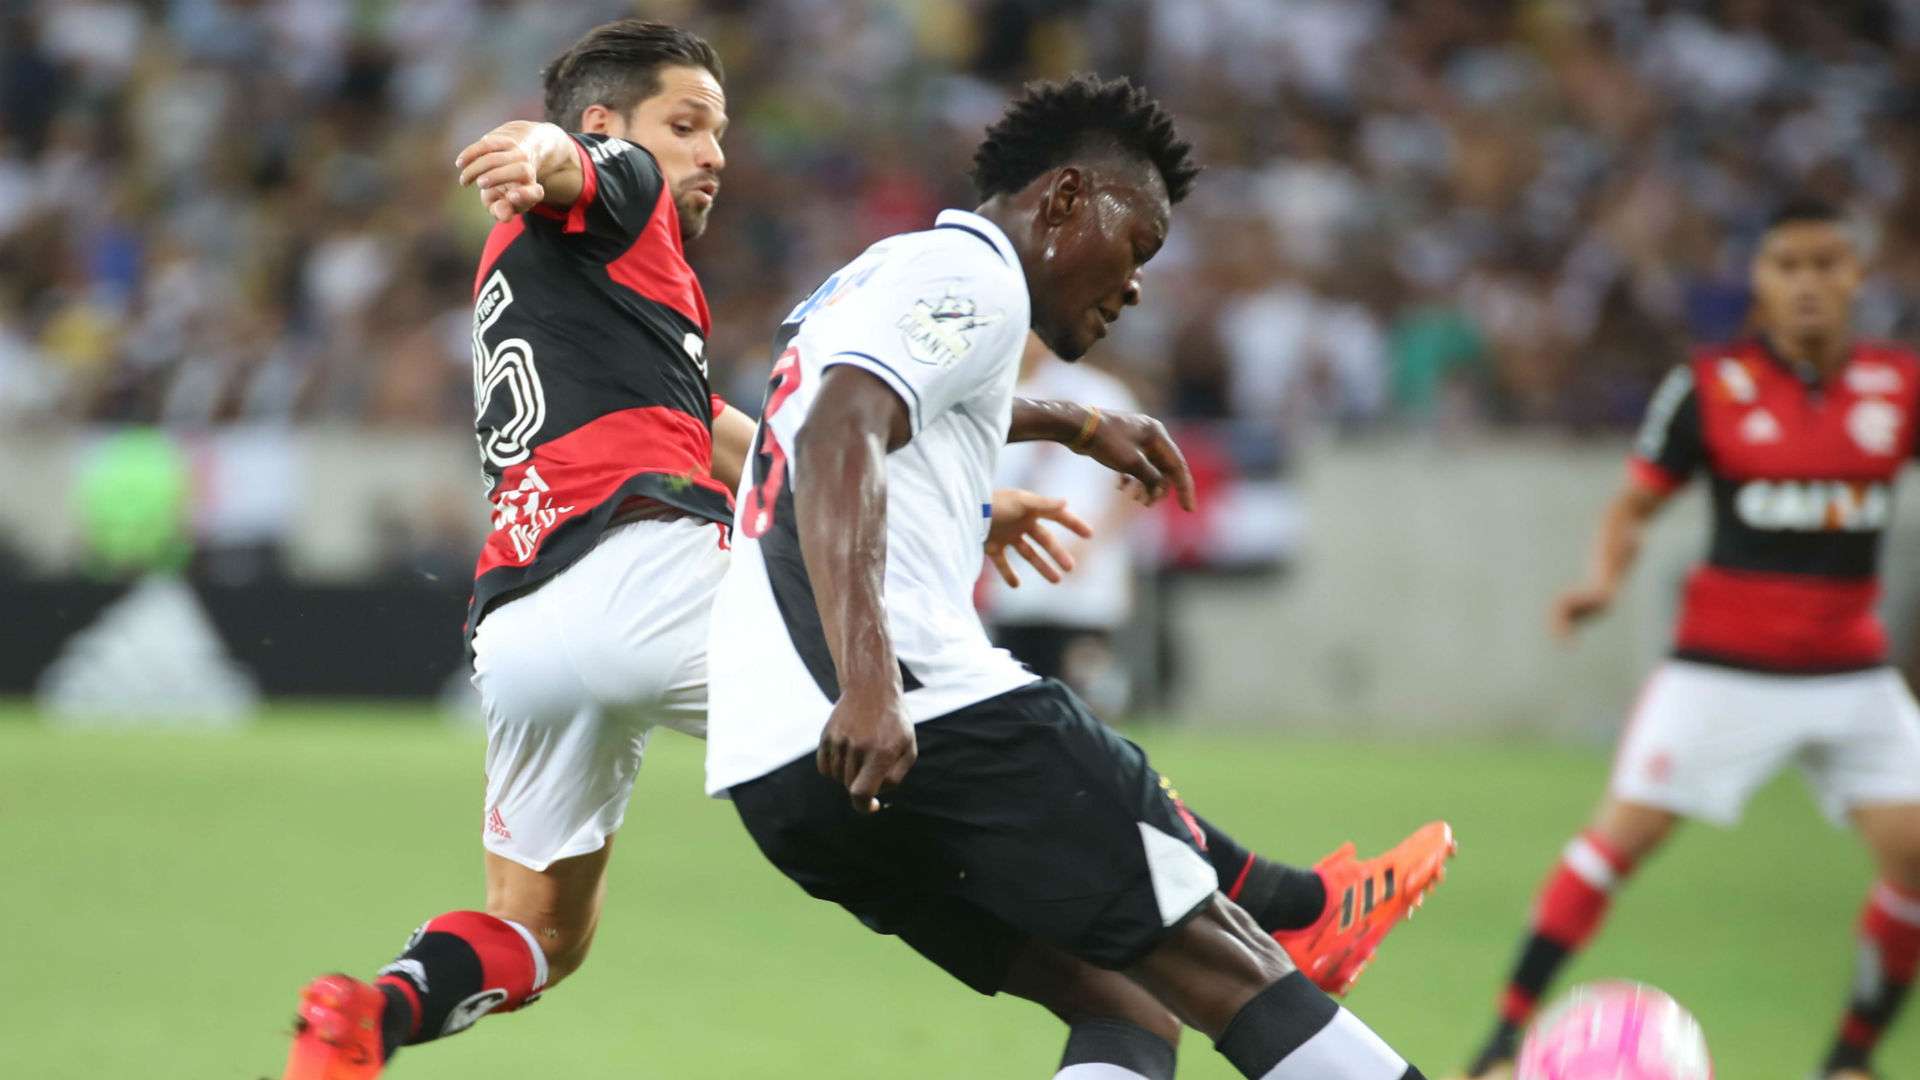 Diego Paulão Flamengo Vasco Brasileirão 28 10 2017